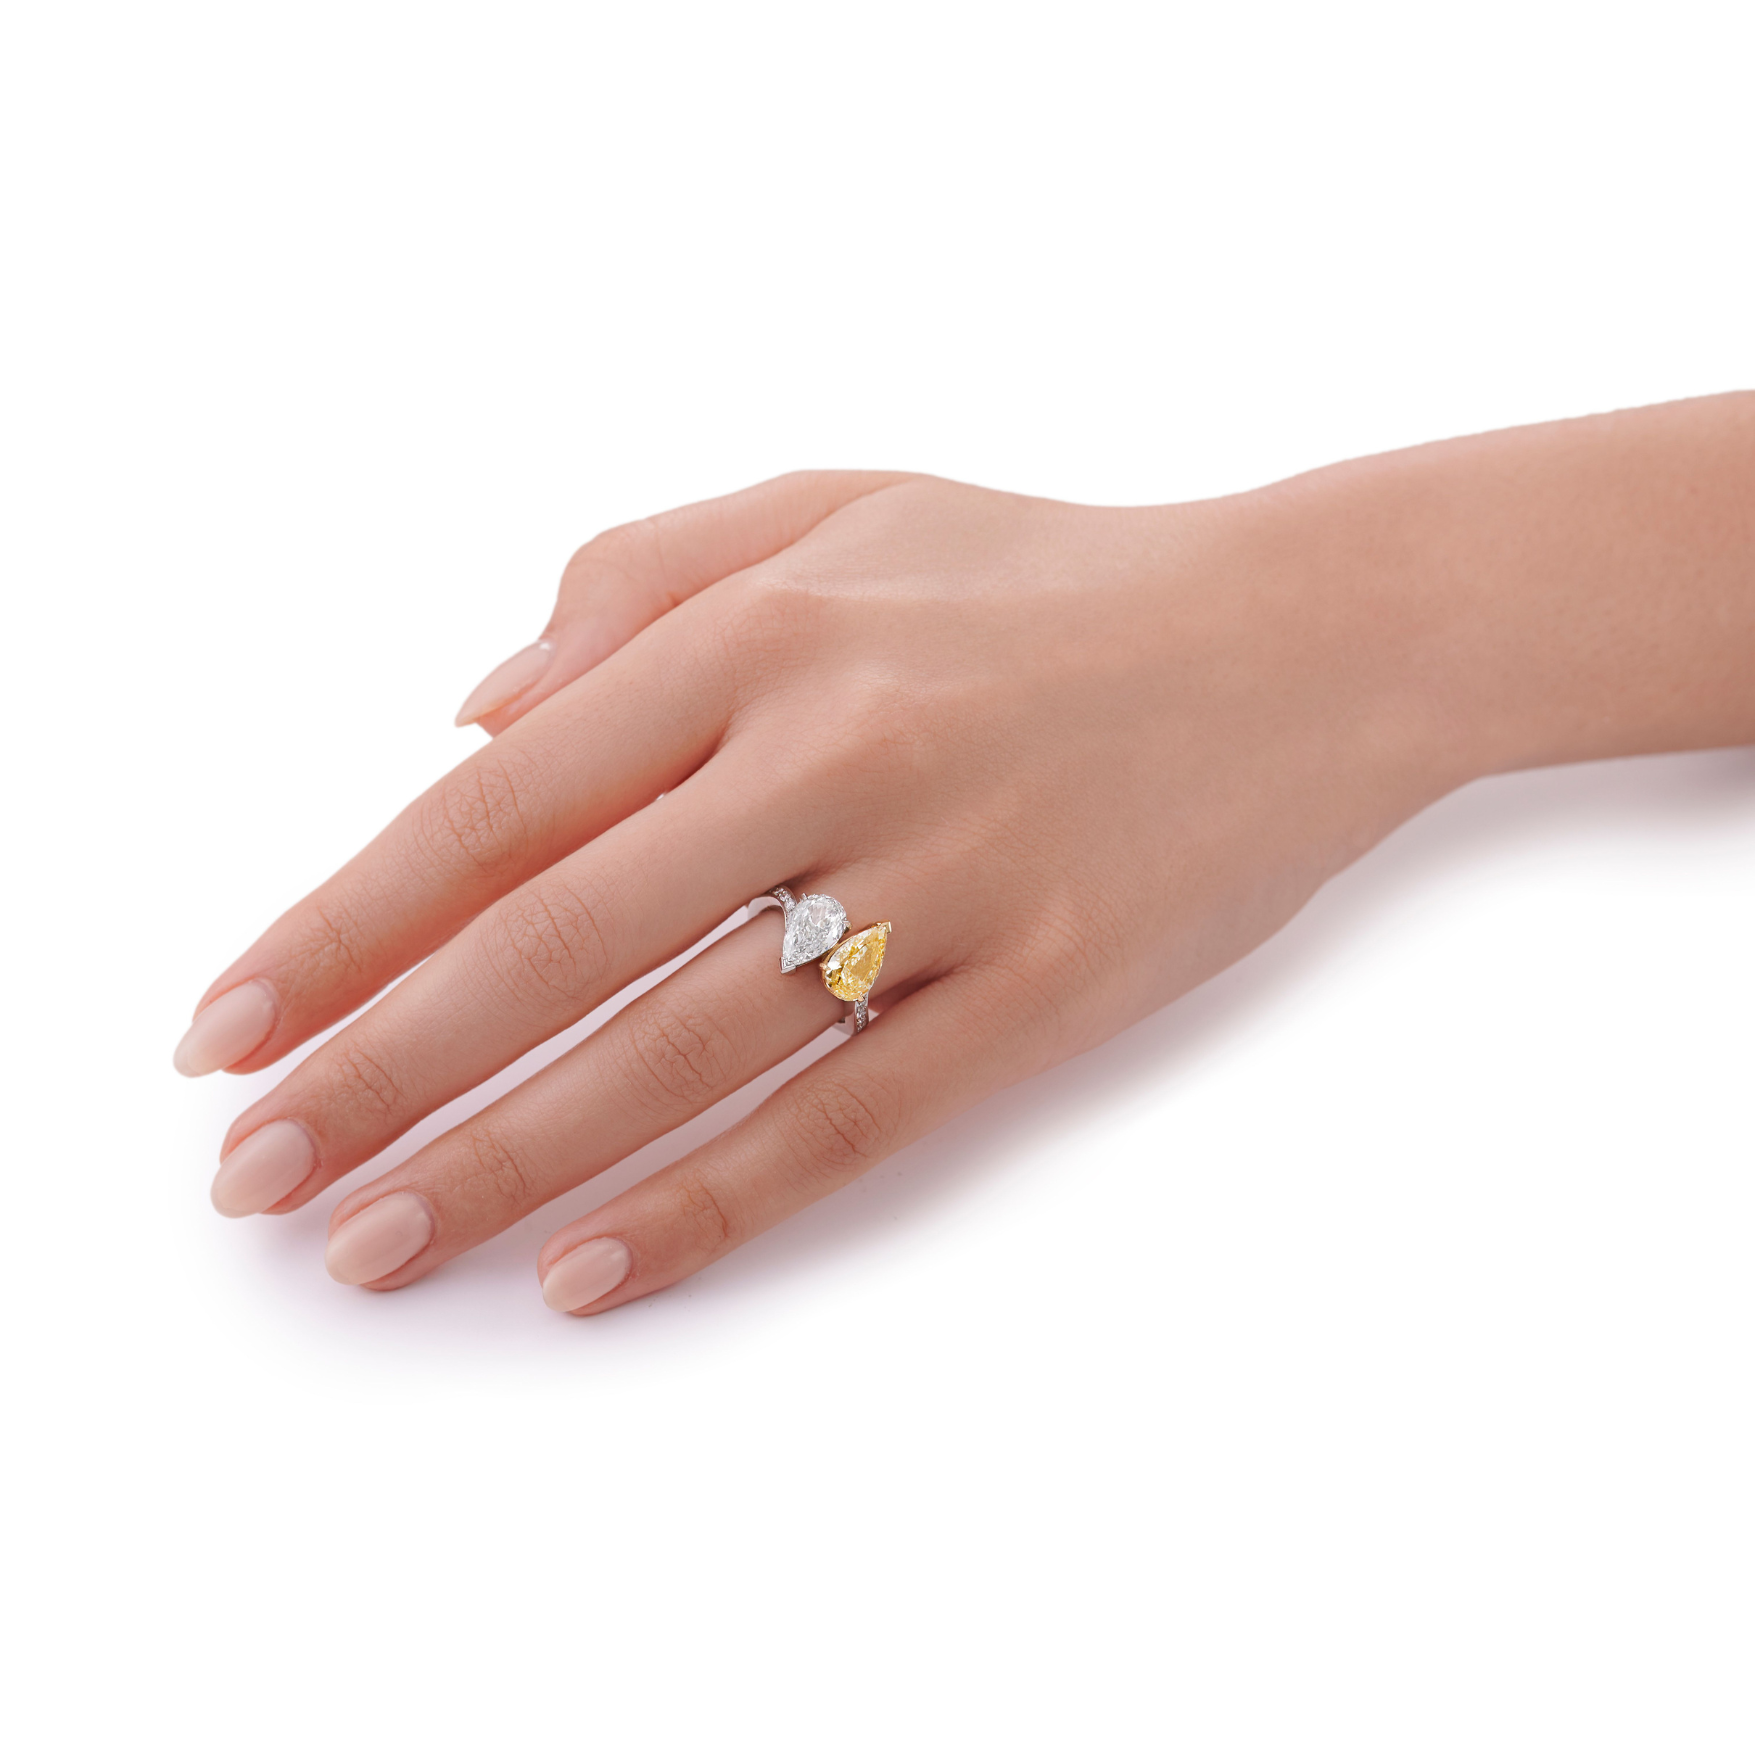 Toi Et Moi Yellow and White Diamond Ring